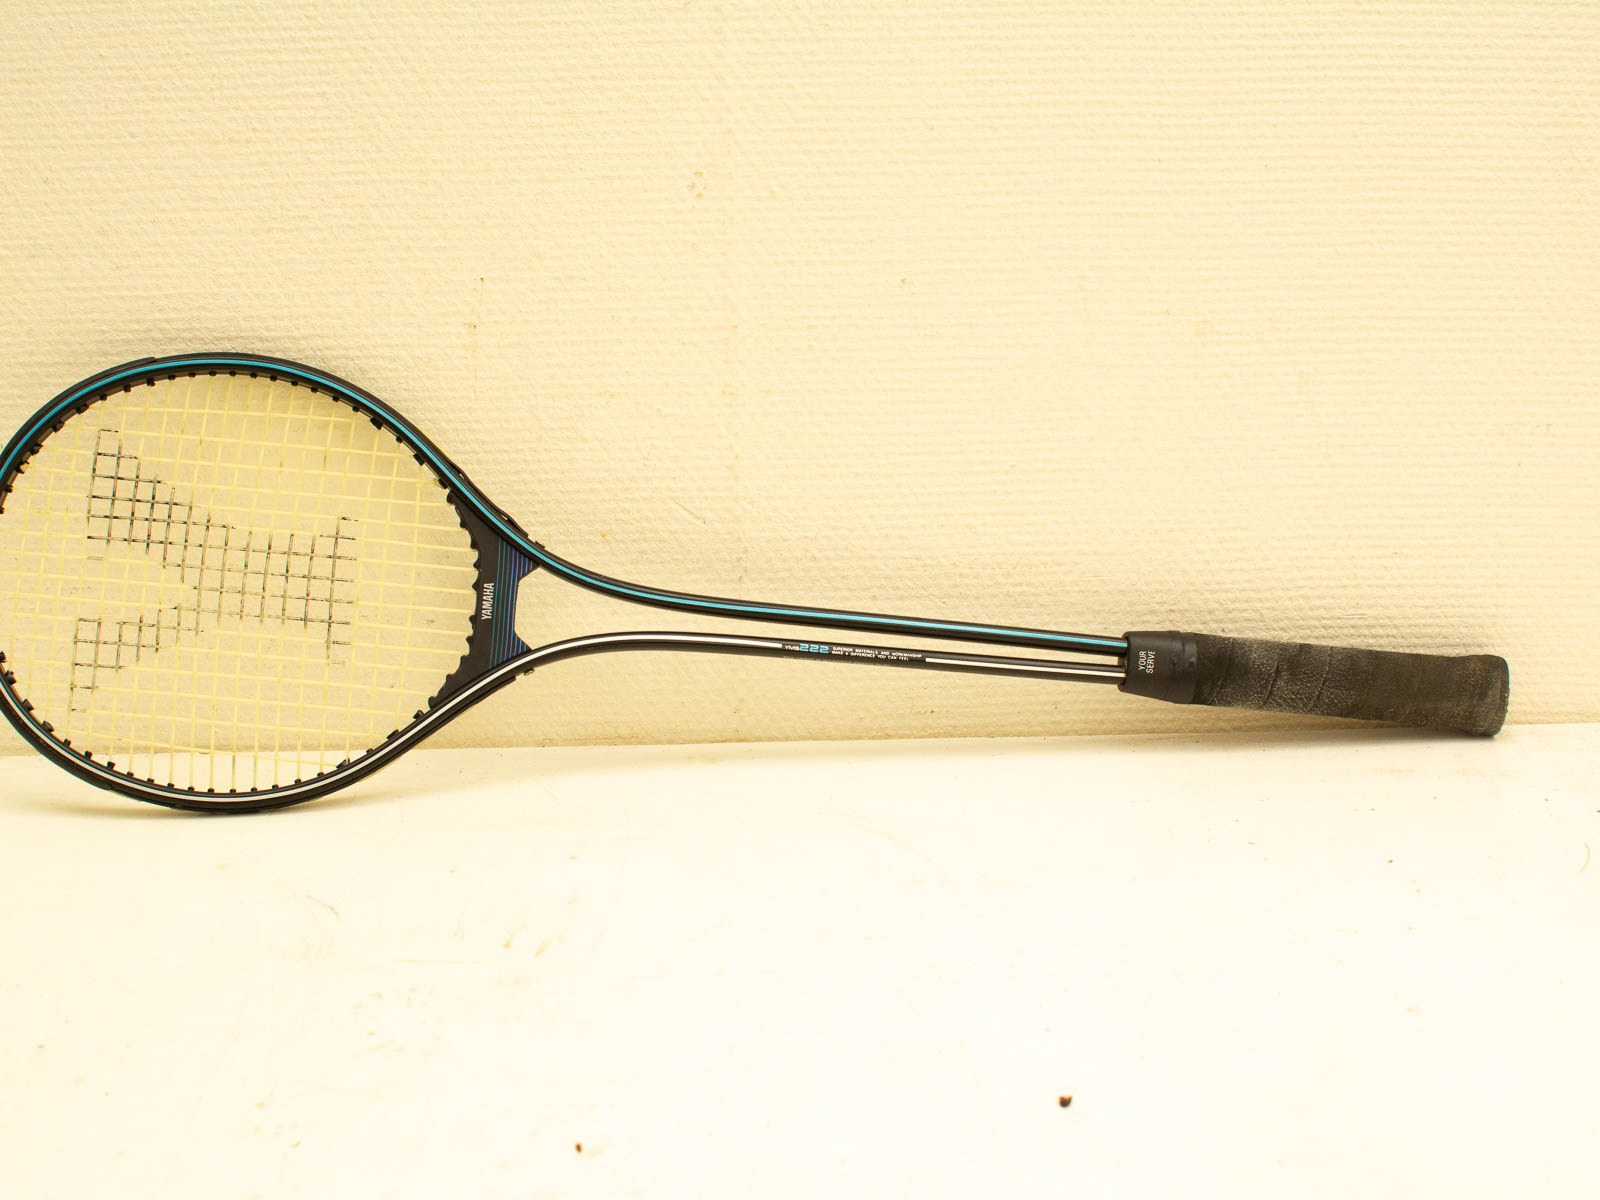 Yamaha tennisracket 32360